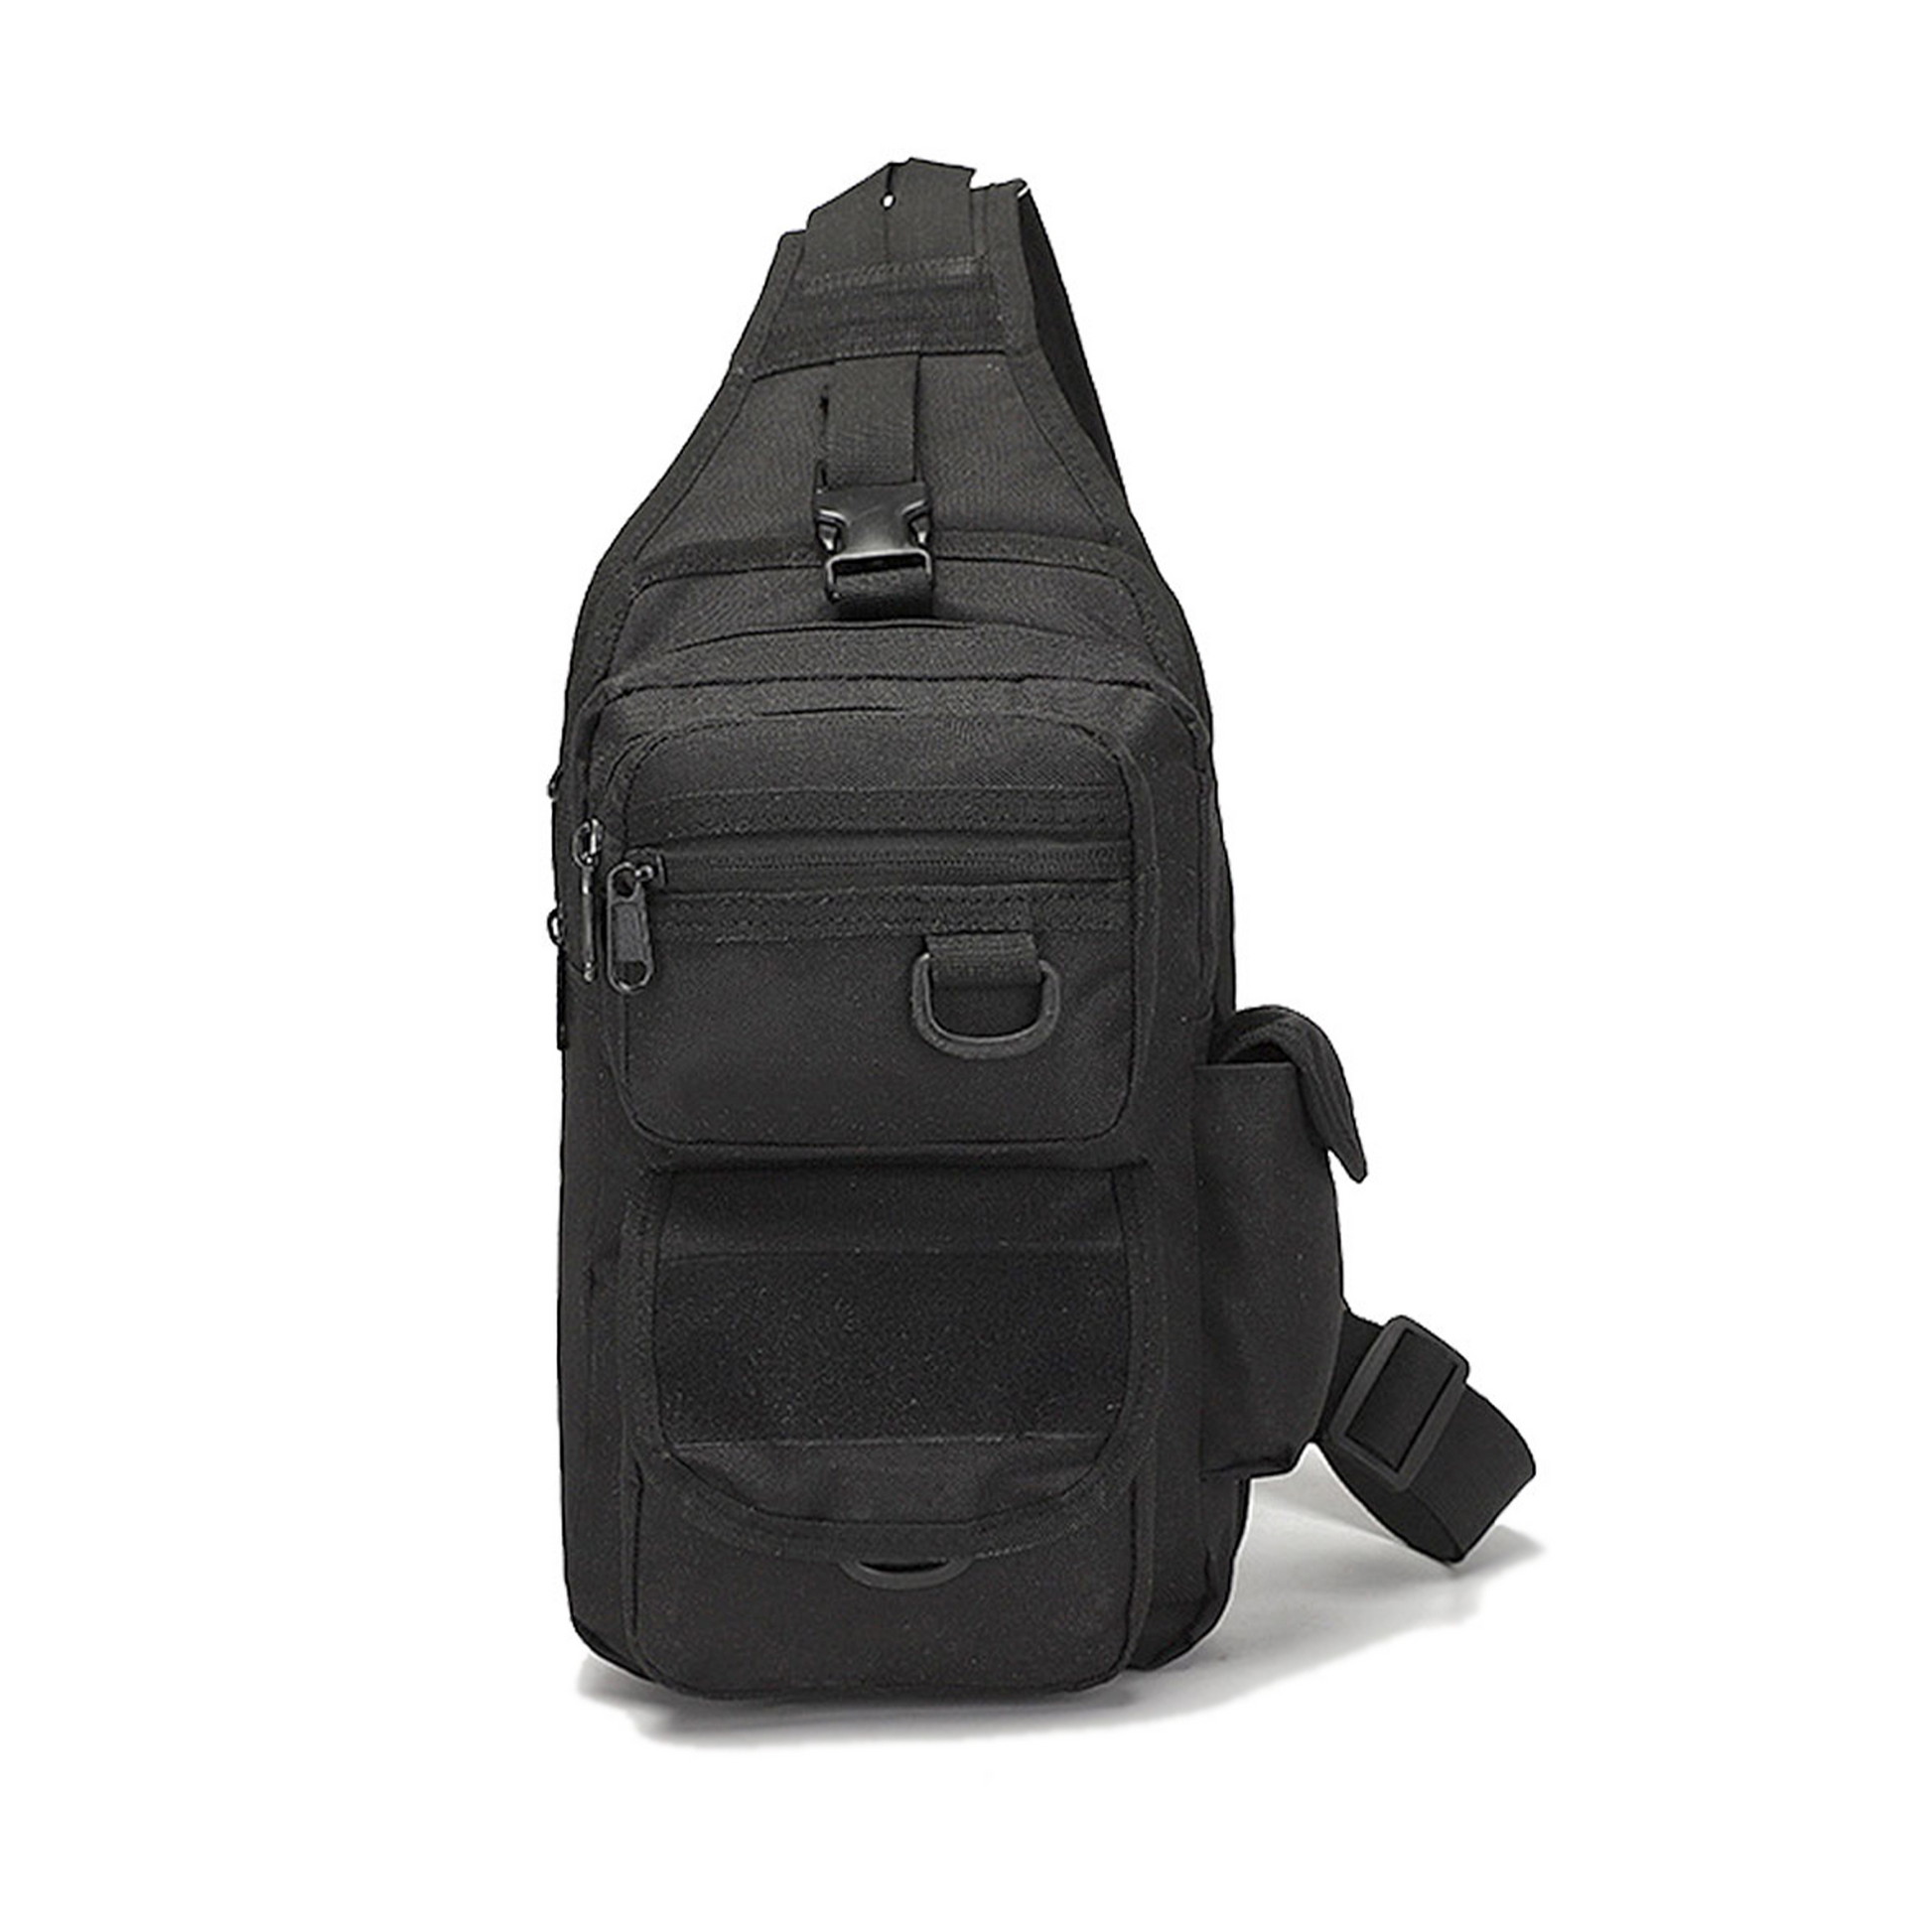 IJ Tactical Sling Tactical BackPack, tactical shoulder bag for men and women